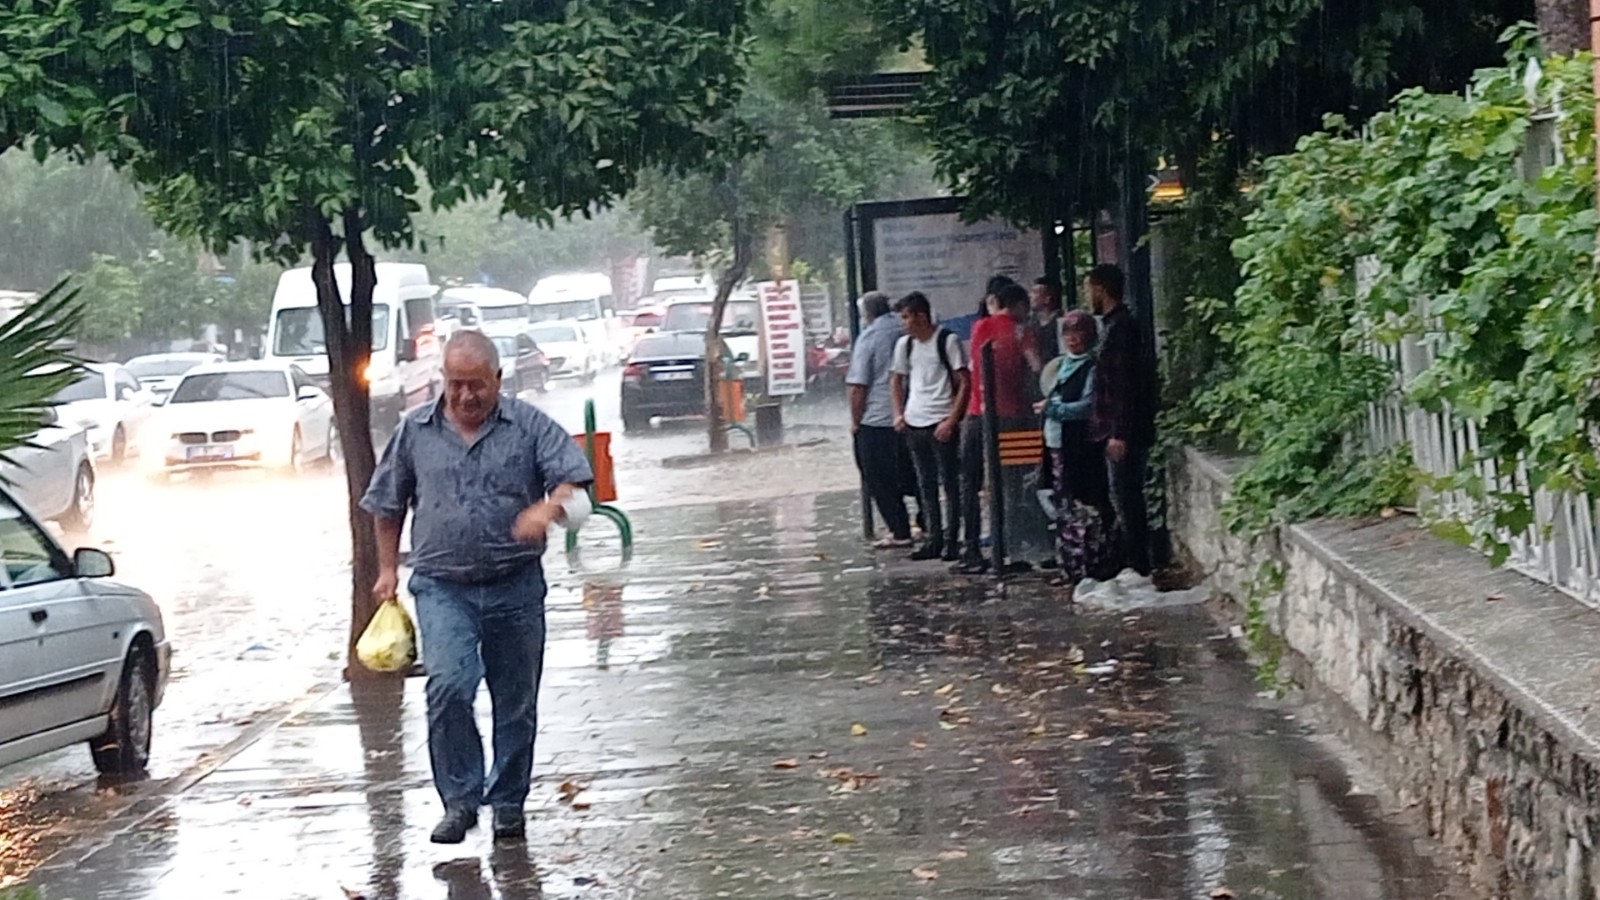 Kozanlılar dolu ve şiddetli yağmura hazırlıksız yakalandı